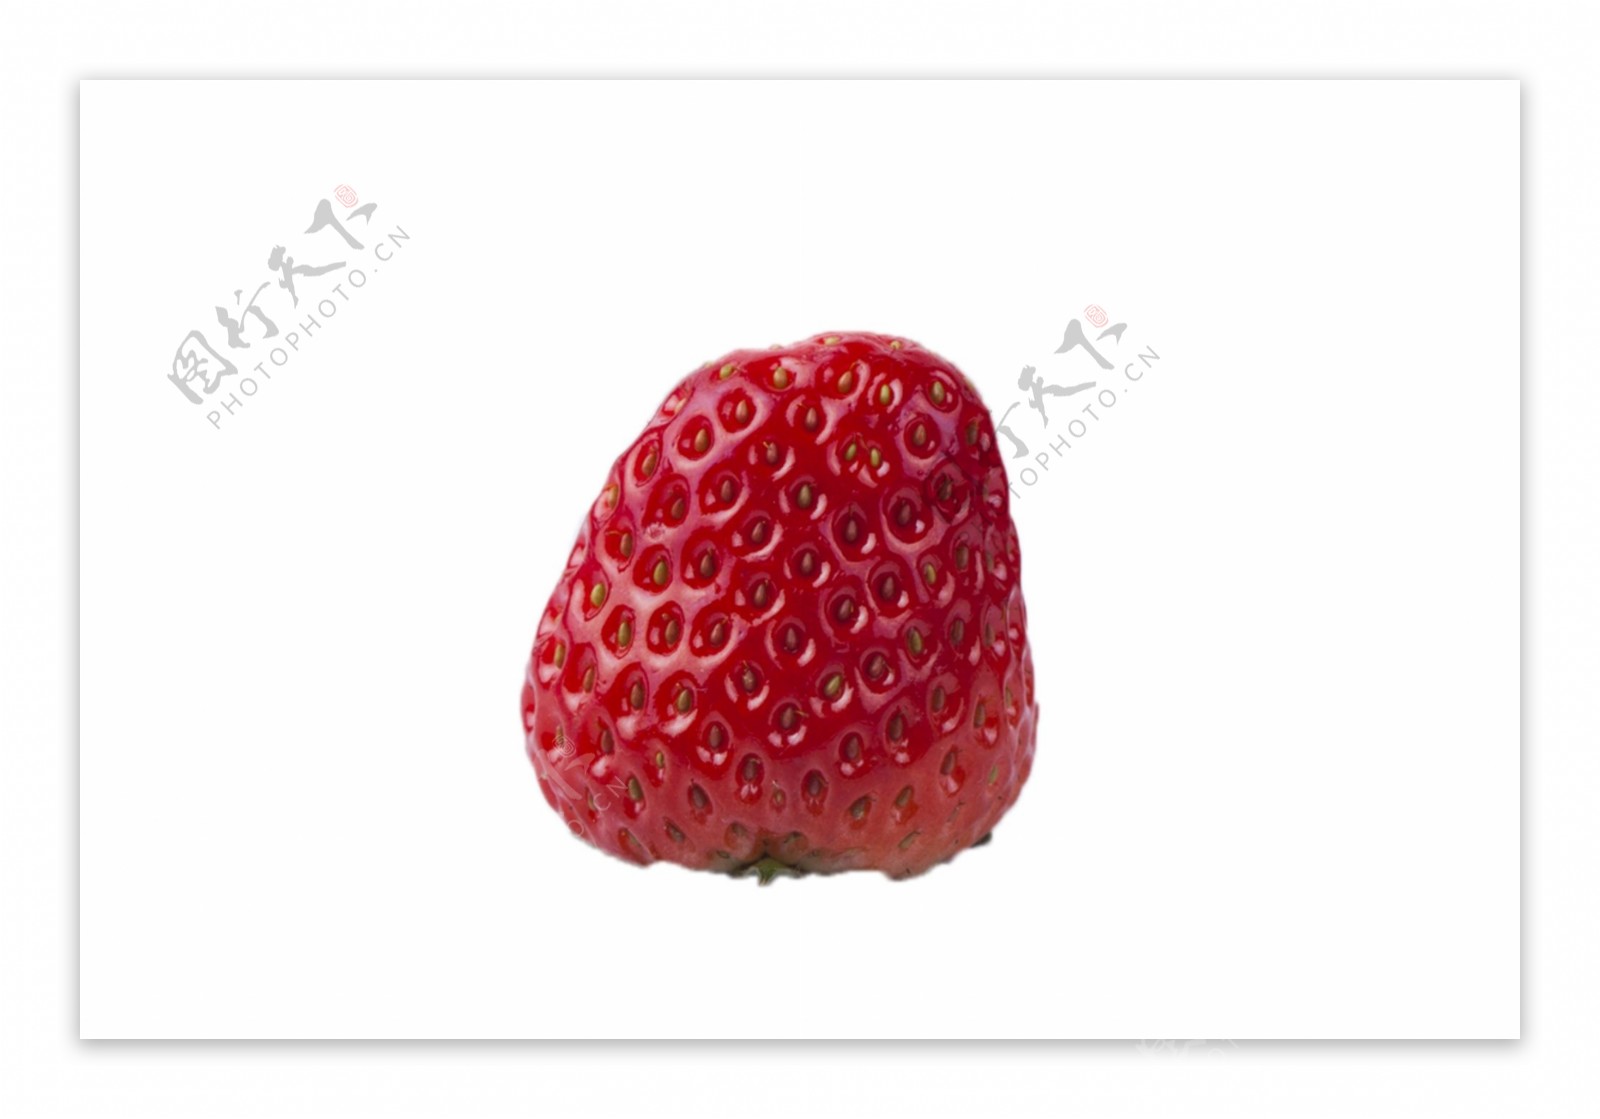 安食全食物绿食品草莓